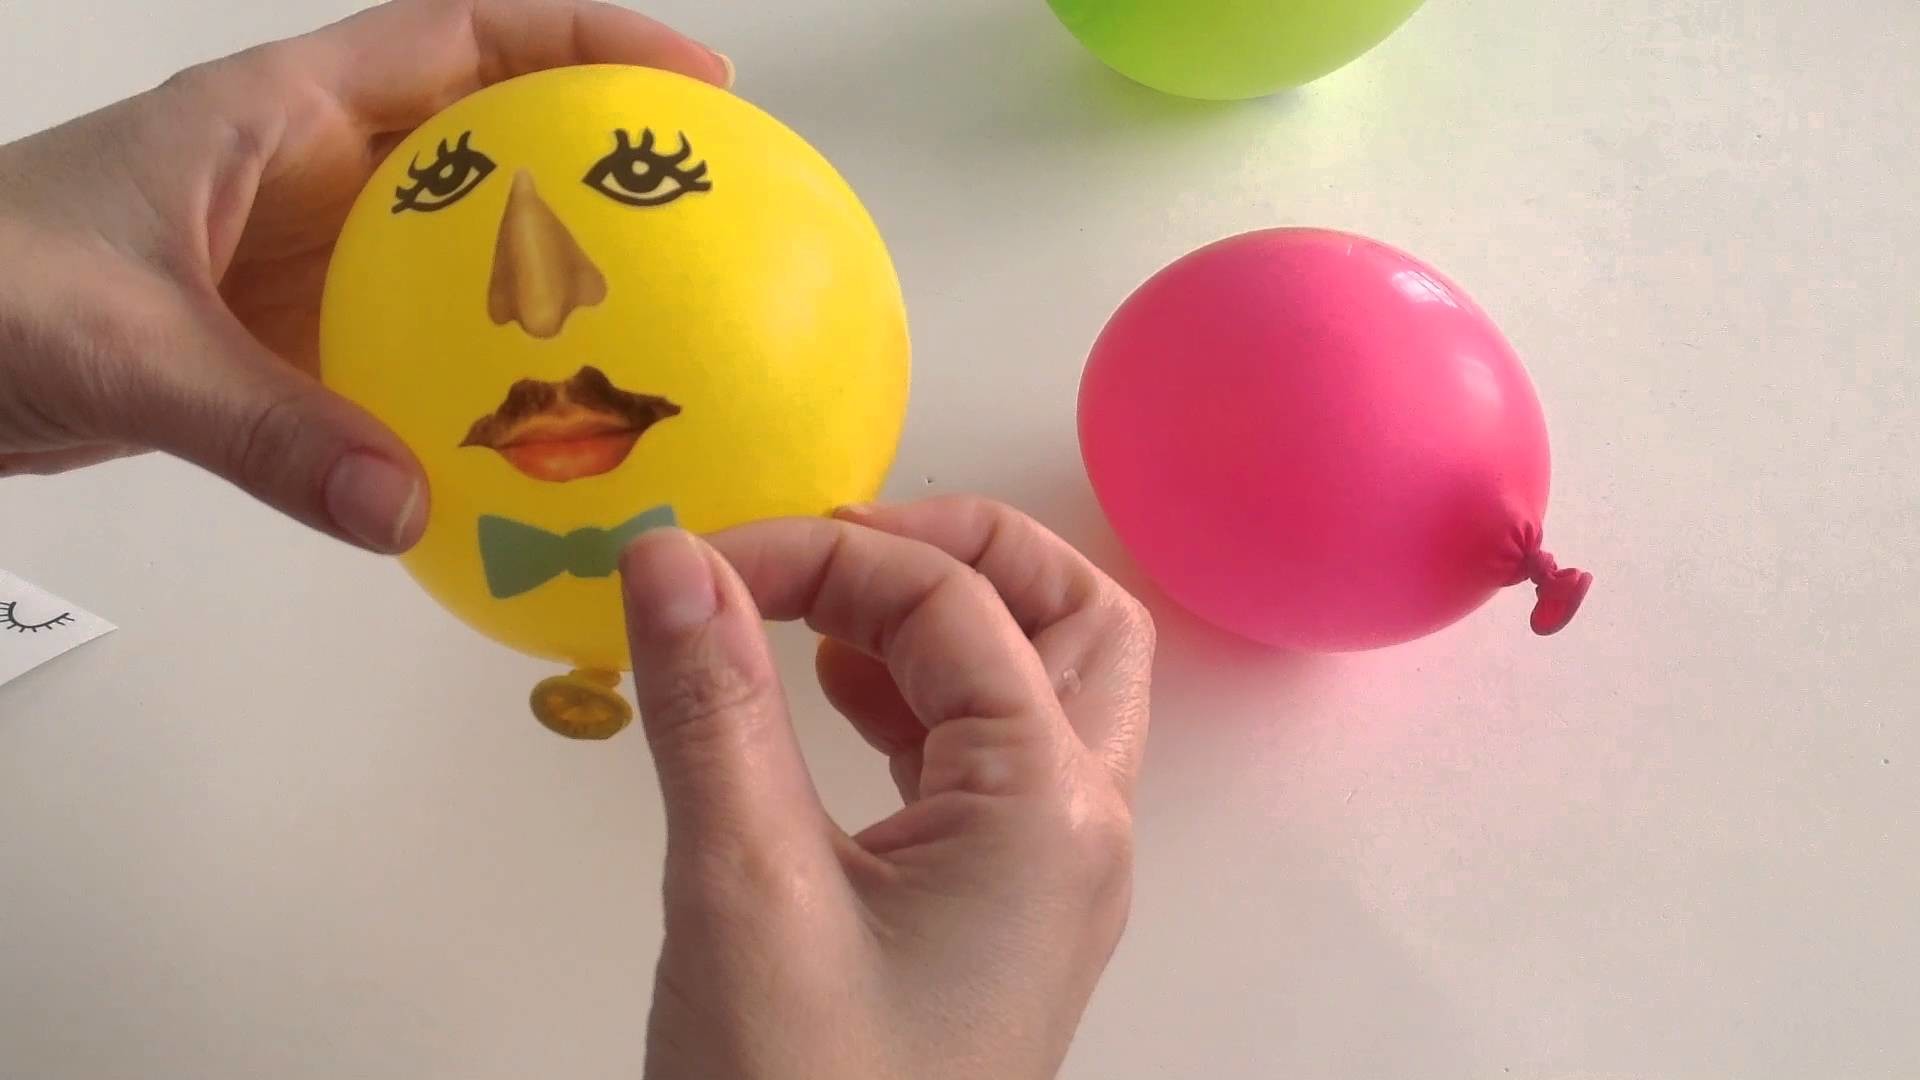 Decora tus globos para fiestas con pegatinas y forma caras divertidas